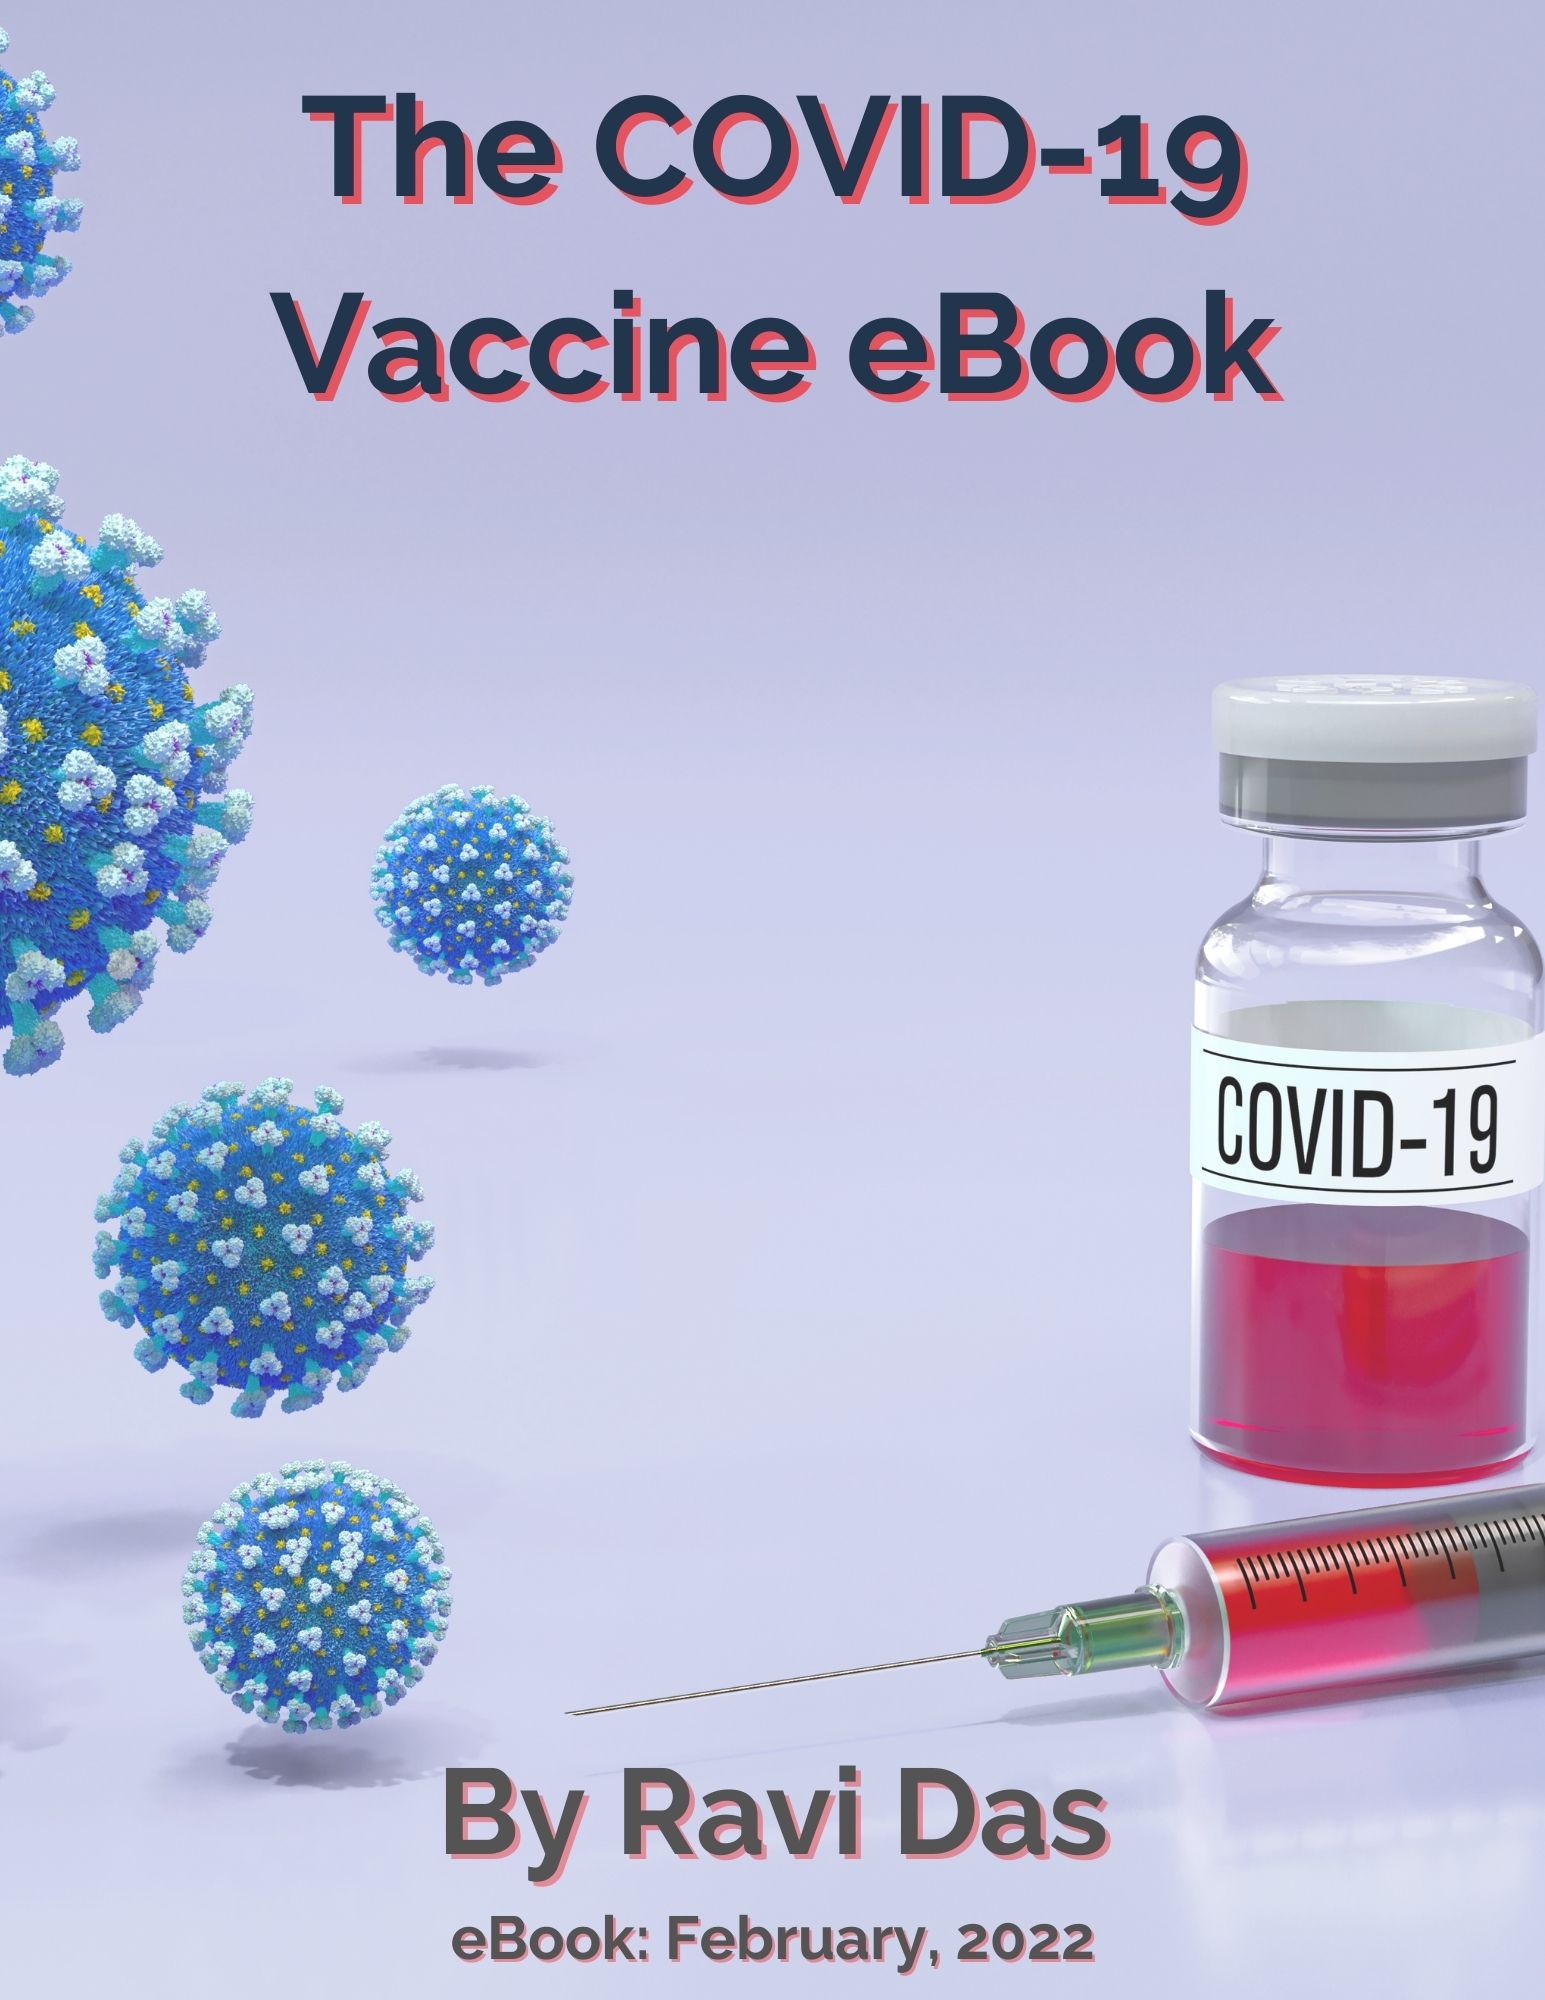 The COVID-19 Vaccine Ebook